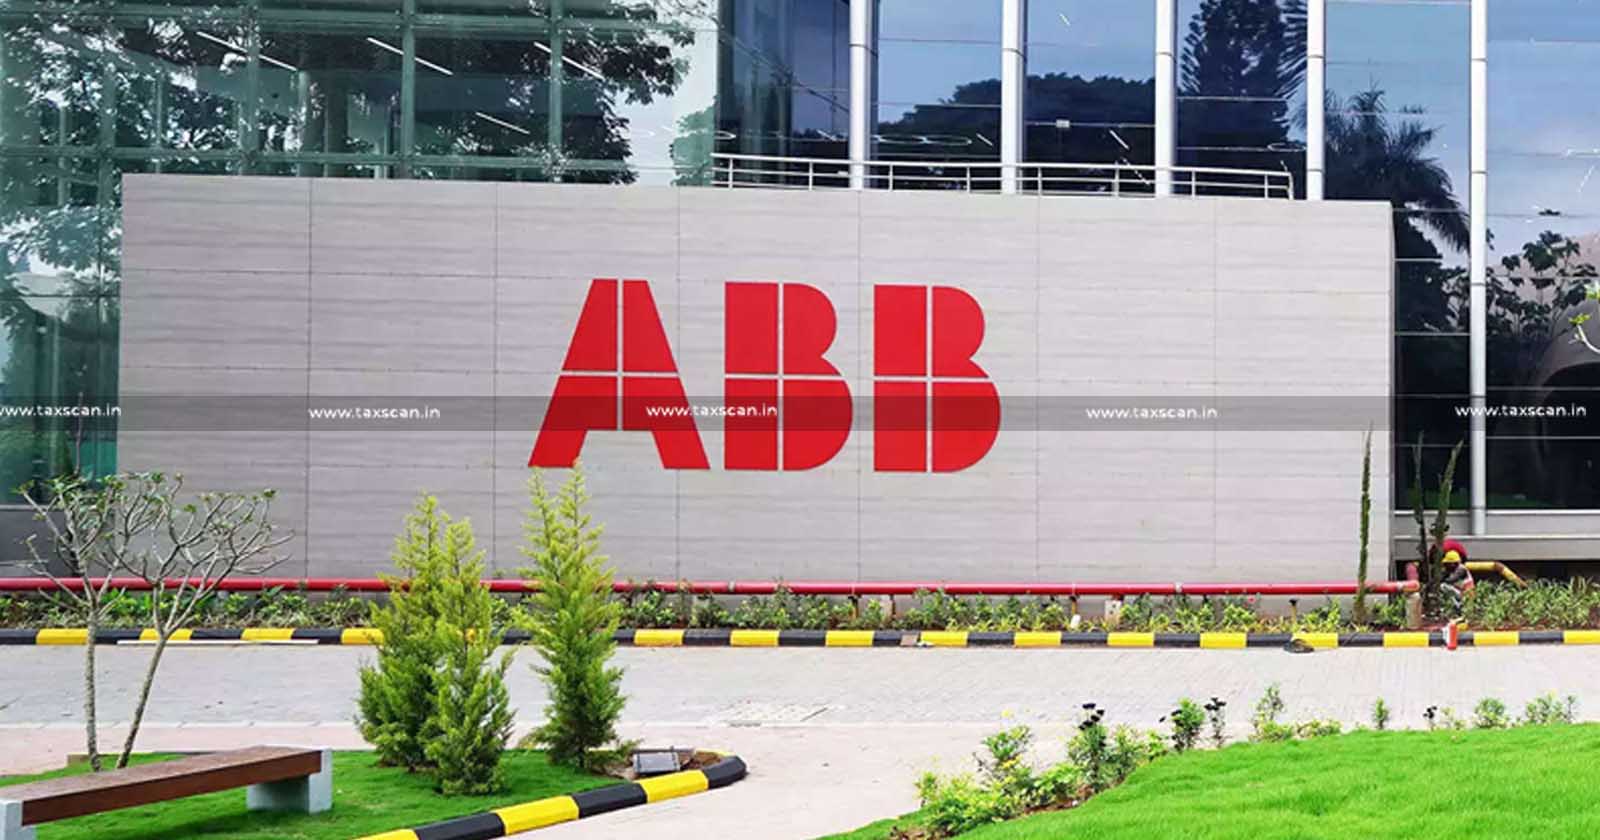 ABB Seeks Tax Analyst - ABB - Tax Analyst - Bachelor's Degree - taxscan - Jobscan